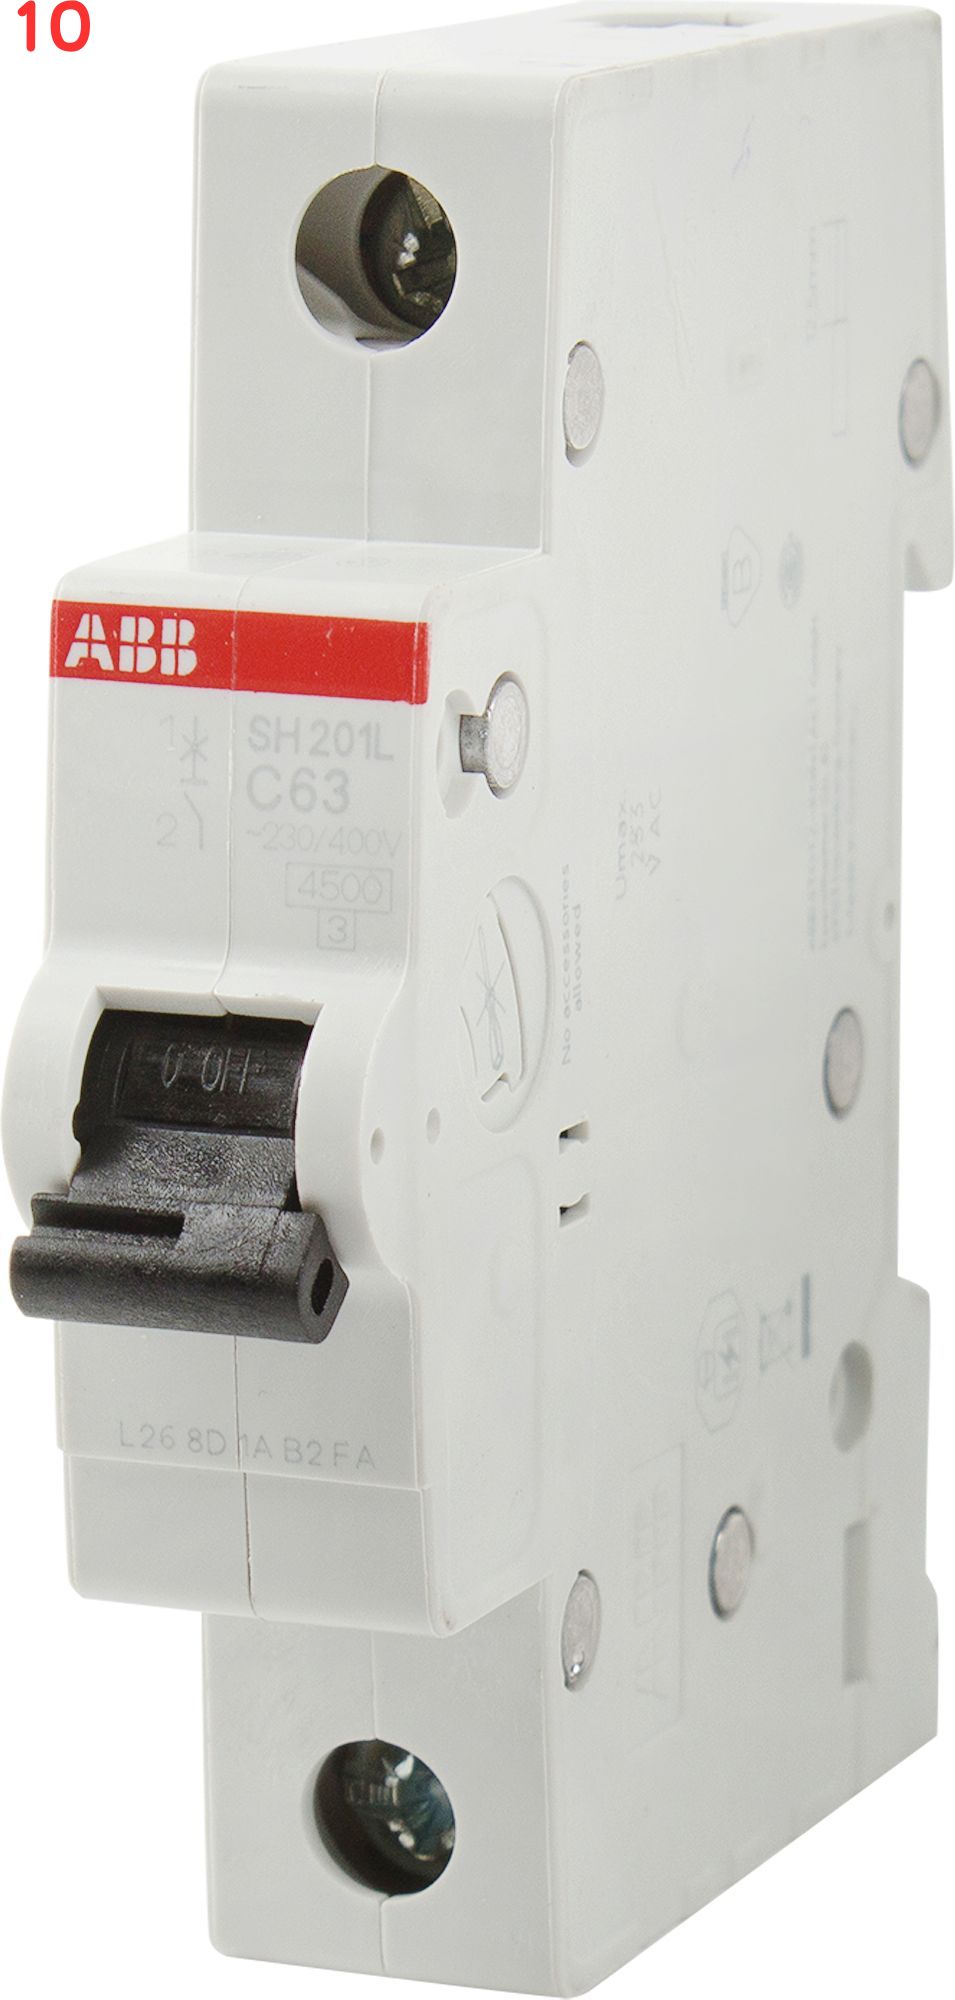 Автоматический выключатель sh201. Автоматический модульный выключатель ABB 1п c sh201l 4.5ка 40а 2cds241001r0404. ABB sh201. Автоматический выключатель ABB на 63 a. ABB sh201 гребенка.